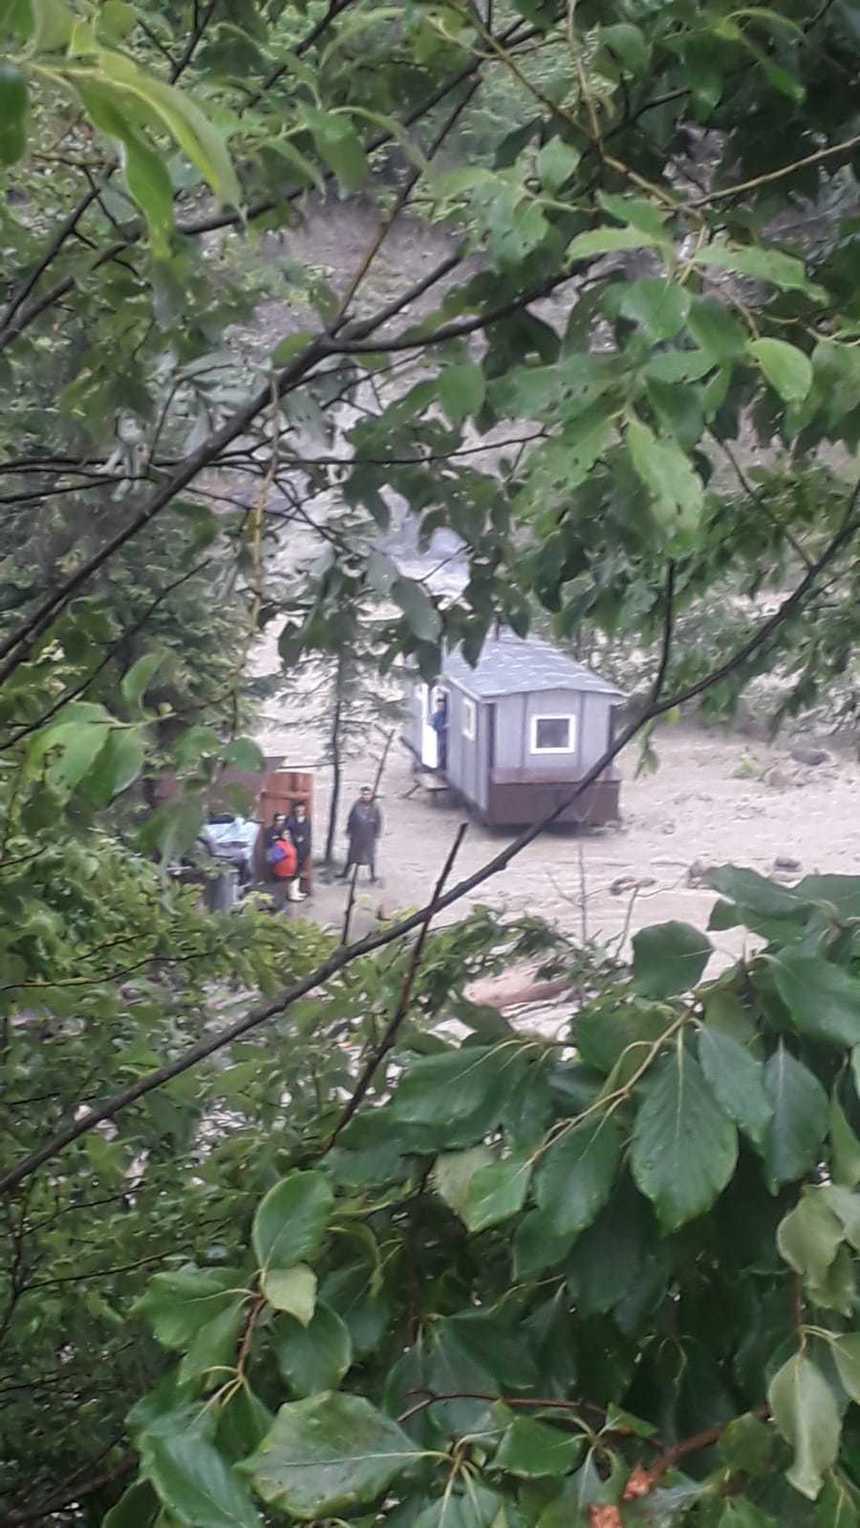 IGSU: 49 de localităţi din 18 judeţe, afectate în urma ploilor abundente/ La Nereju (Vrancea), s-a reluat intervenţia pentru salvarea a 12 muncitori blocaţi într-un vagon remorcă înconjurat de ape/ În Bacău, şapte oameni au fost evacuaţi - FOTO